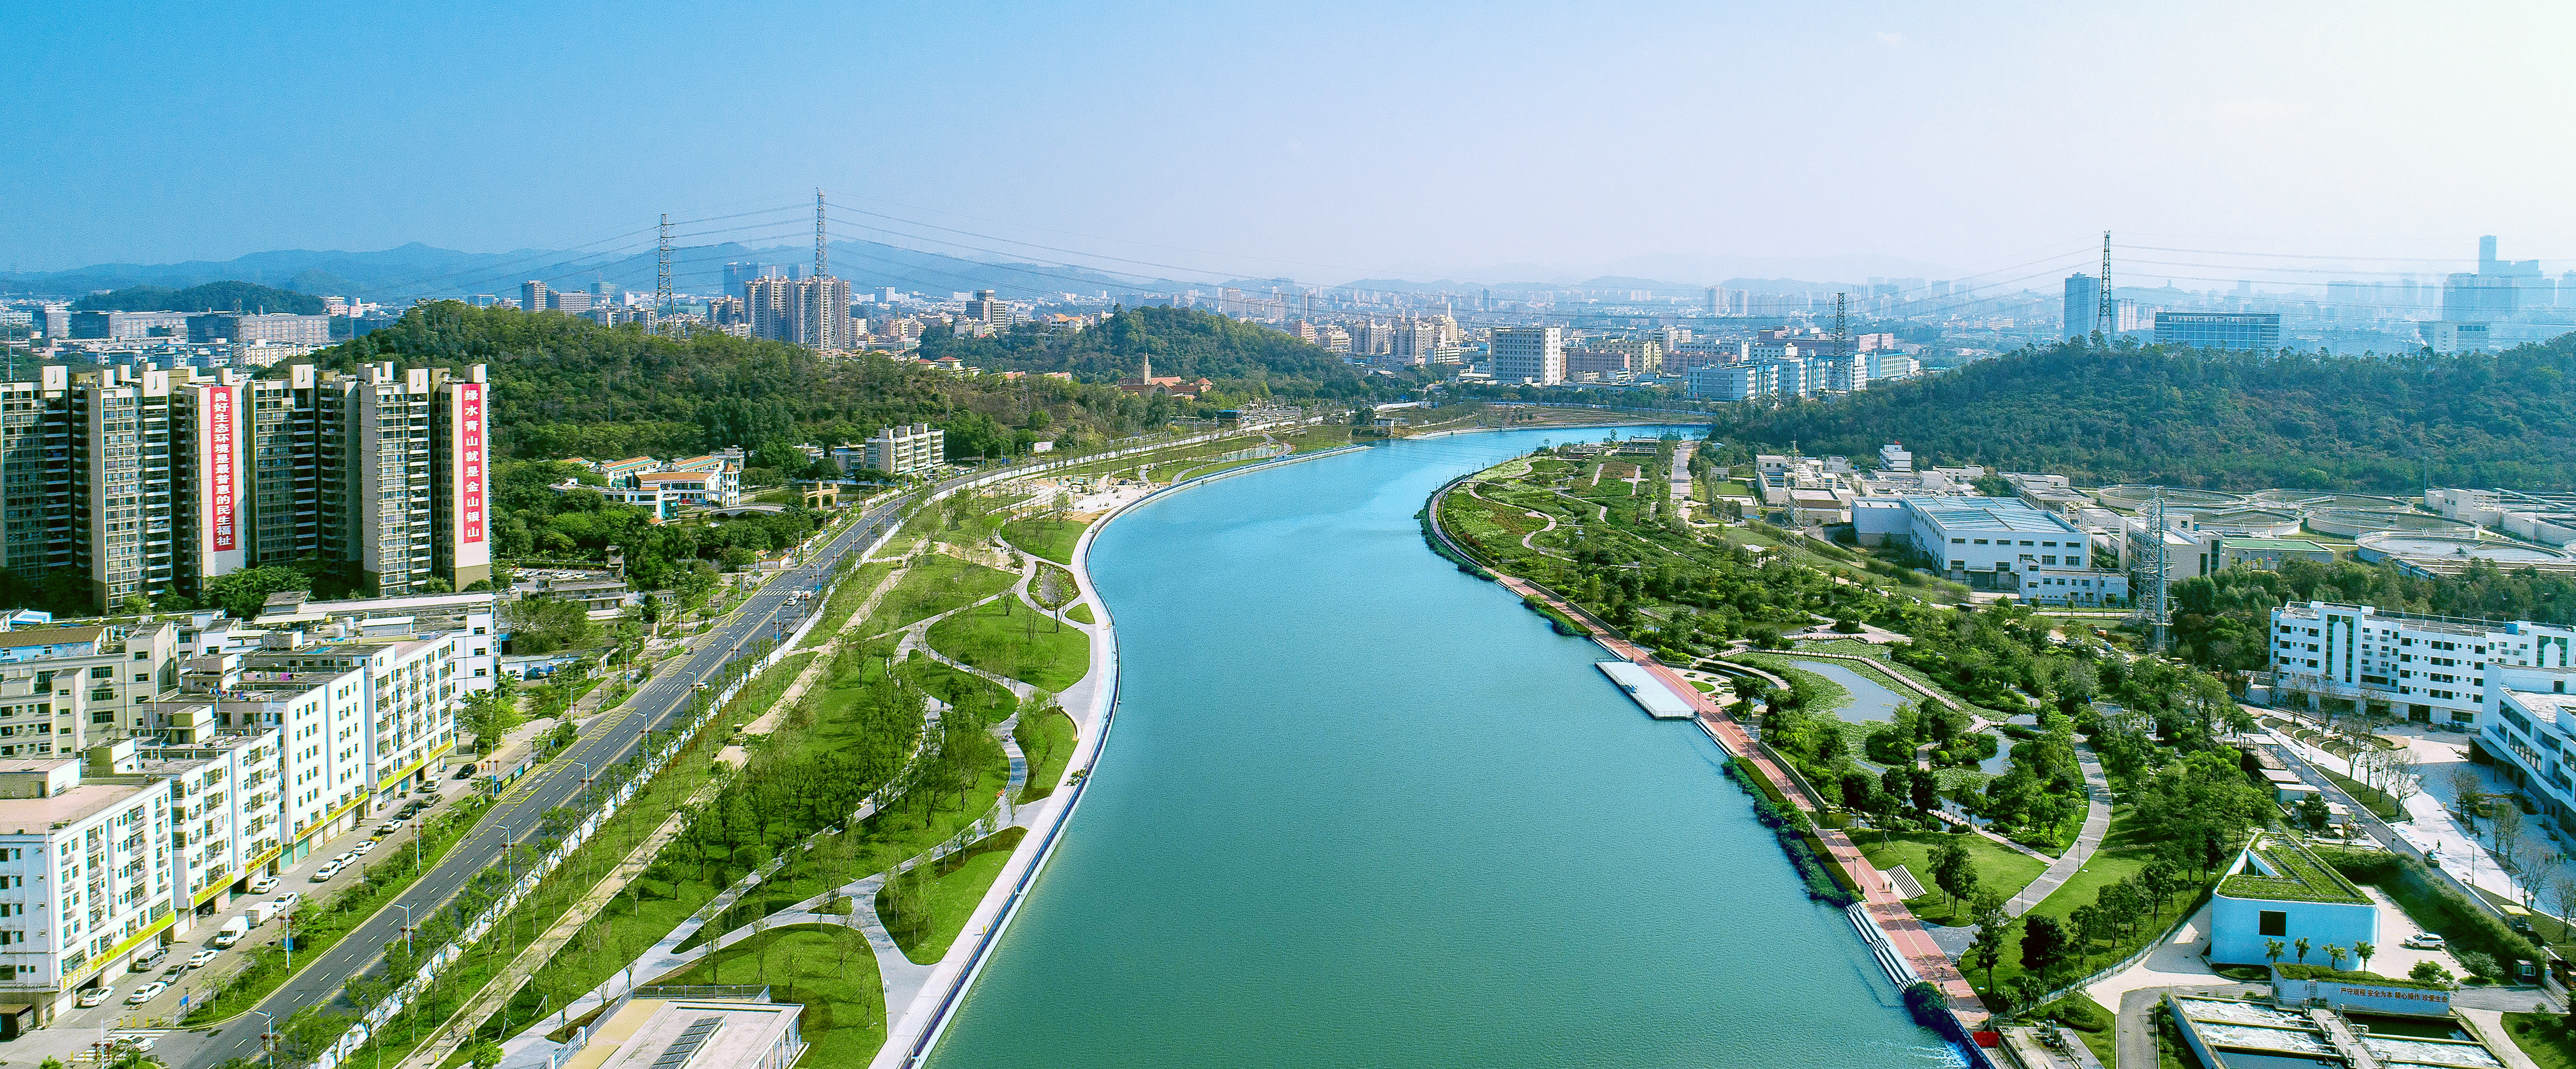 深圳茅洲河流域水環境綜合整治工程